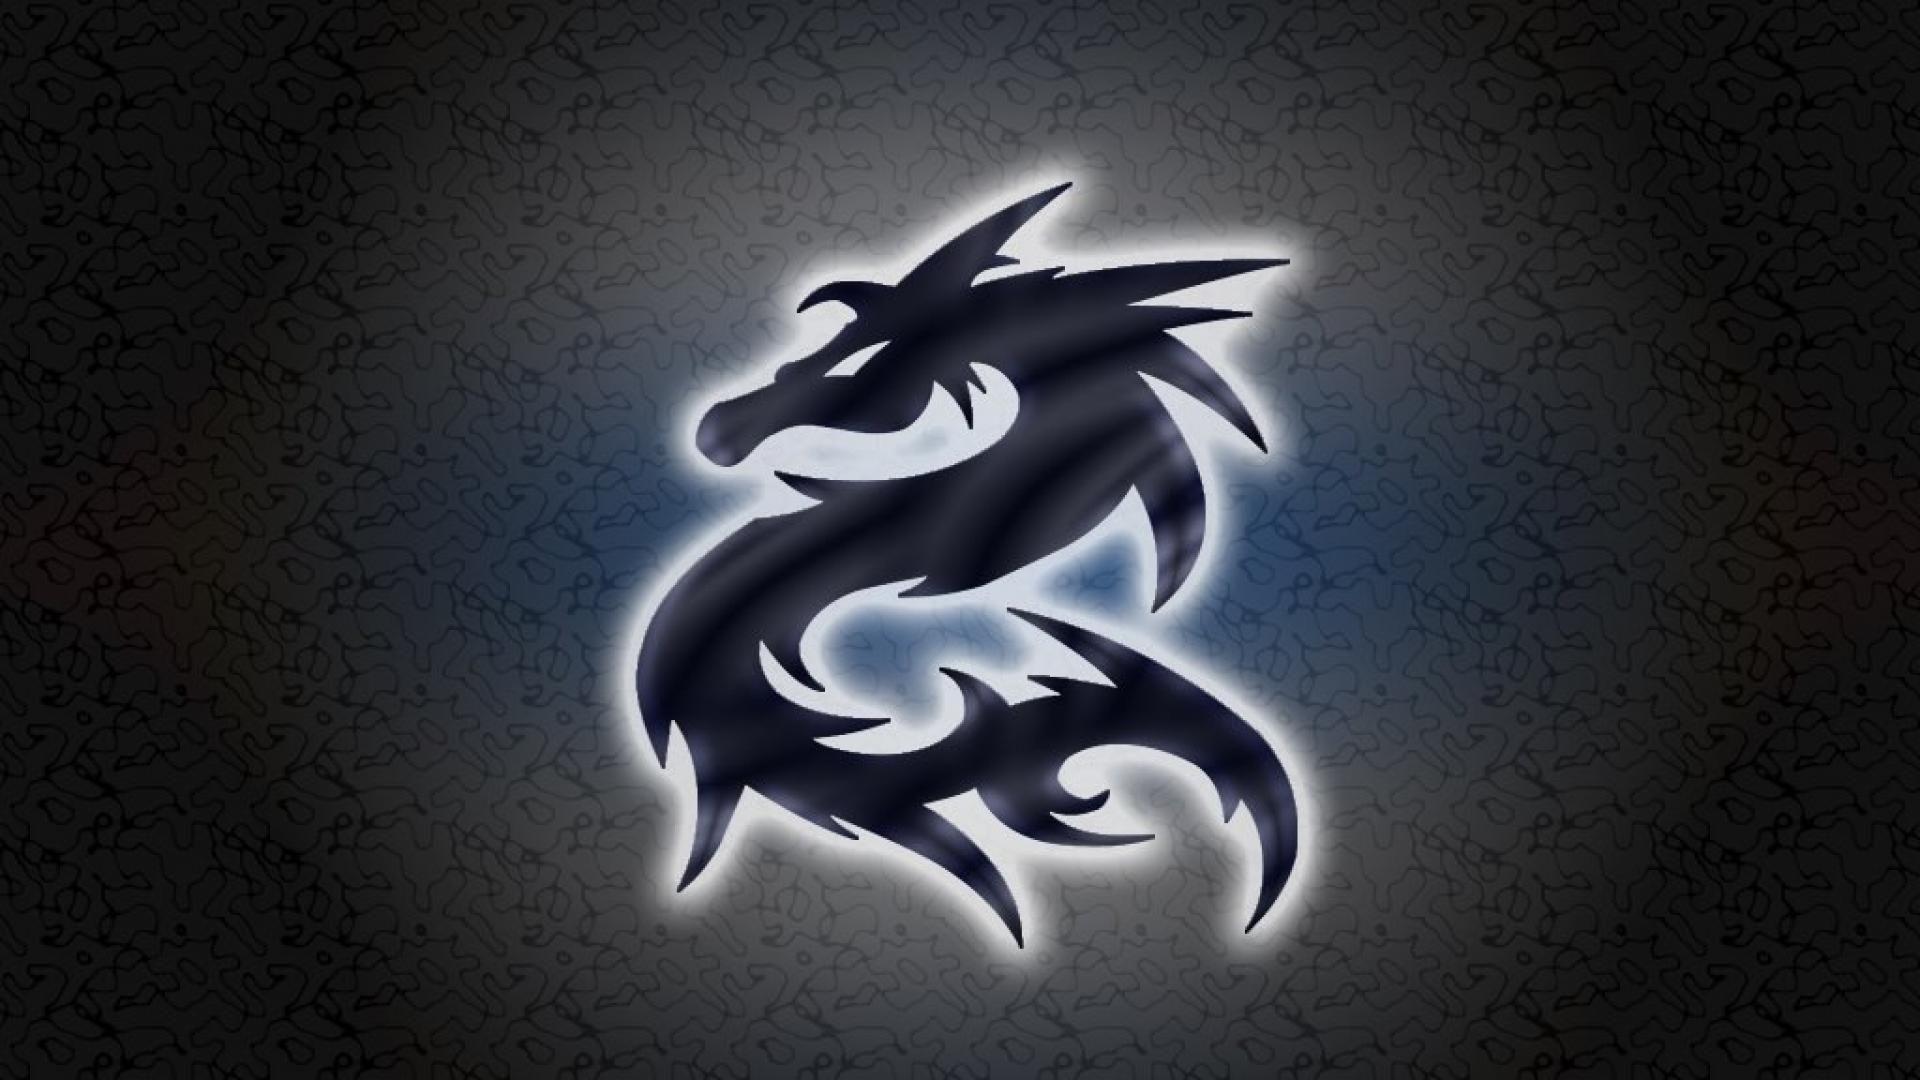 Cool Dragon Logos